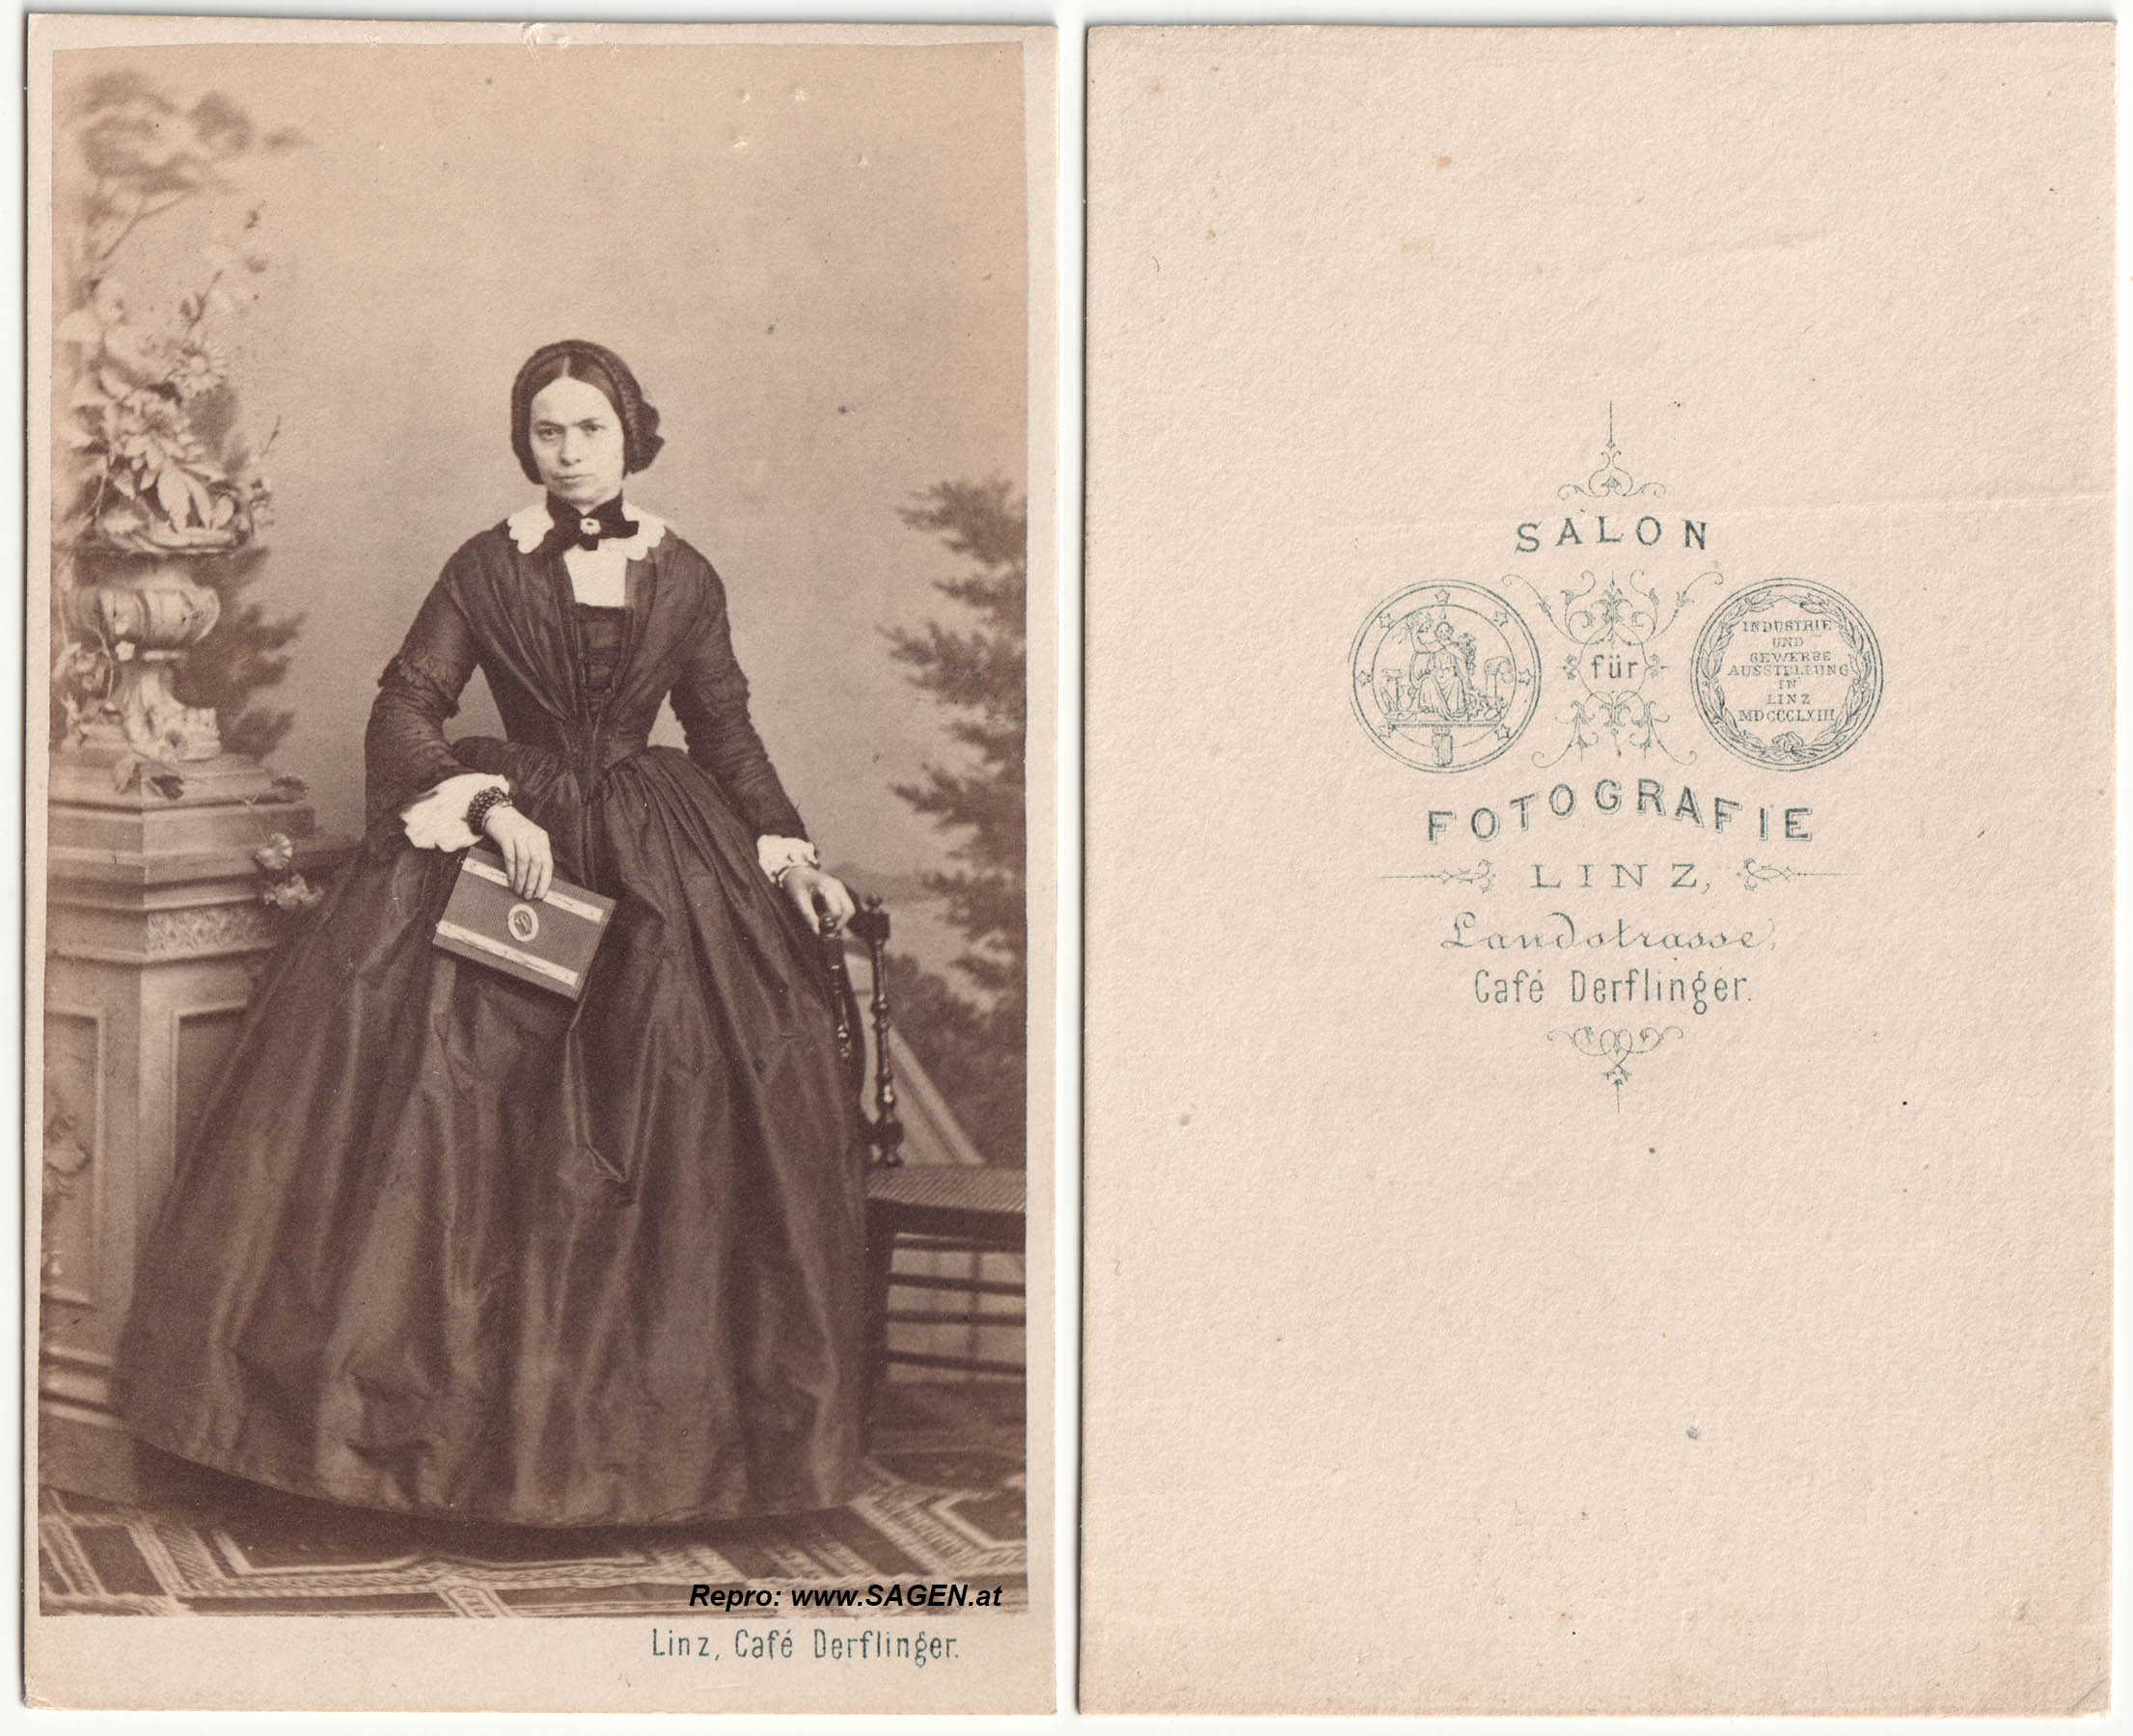 Porträt einer Dame, Salon für Fotografie, Café Derflinger, Linz um 1863